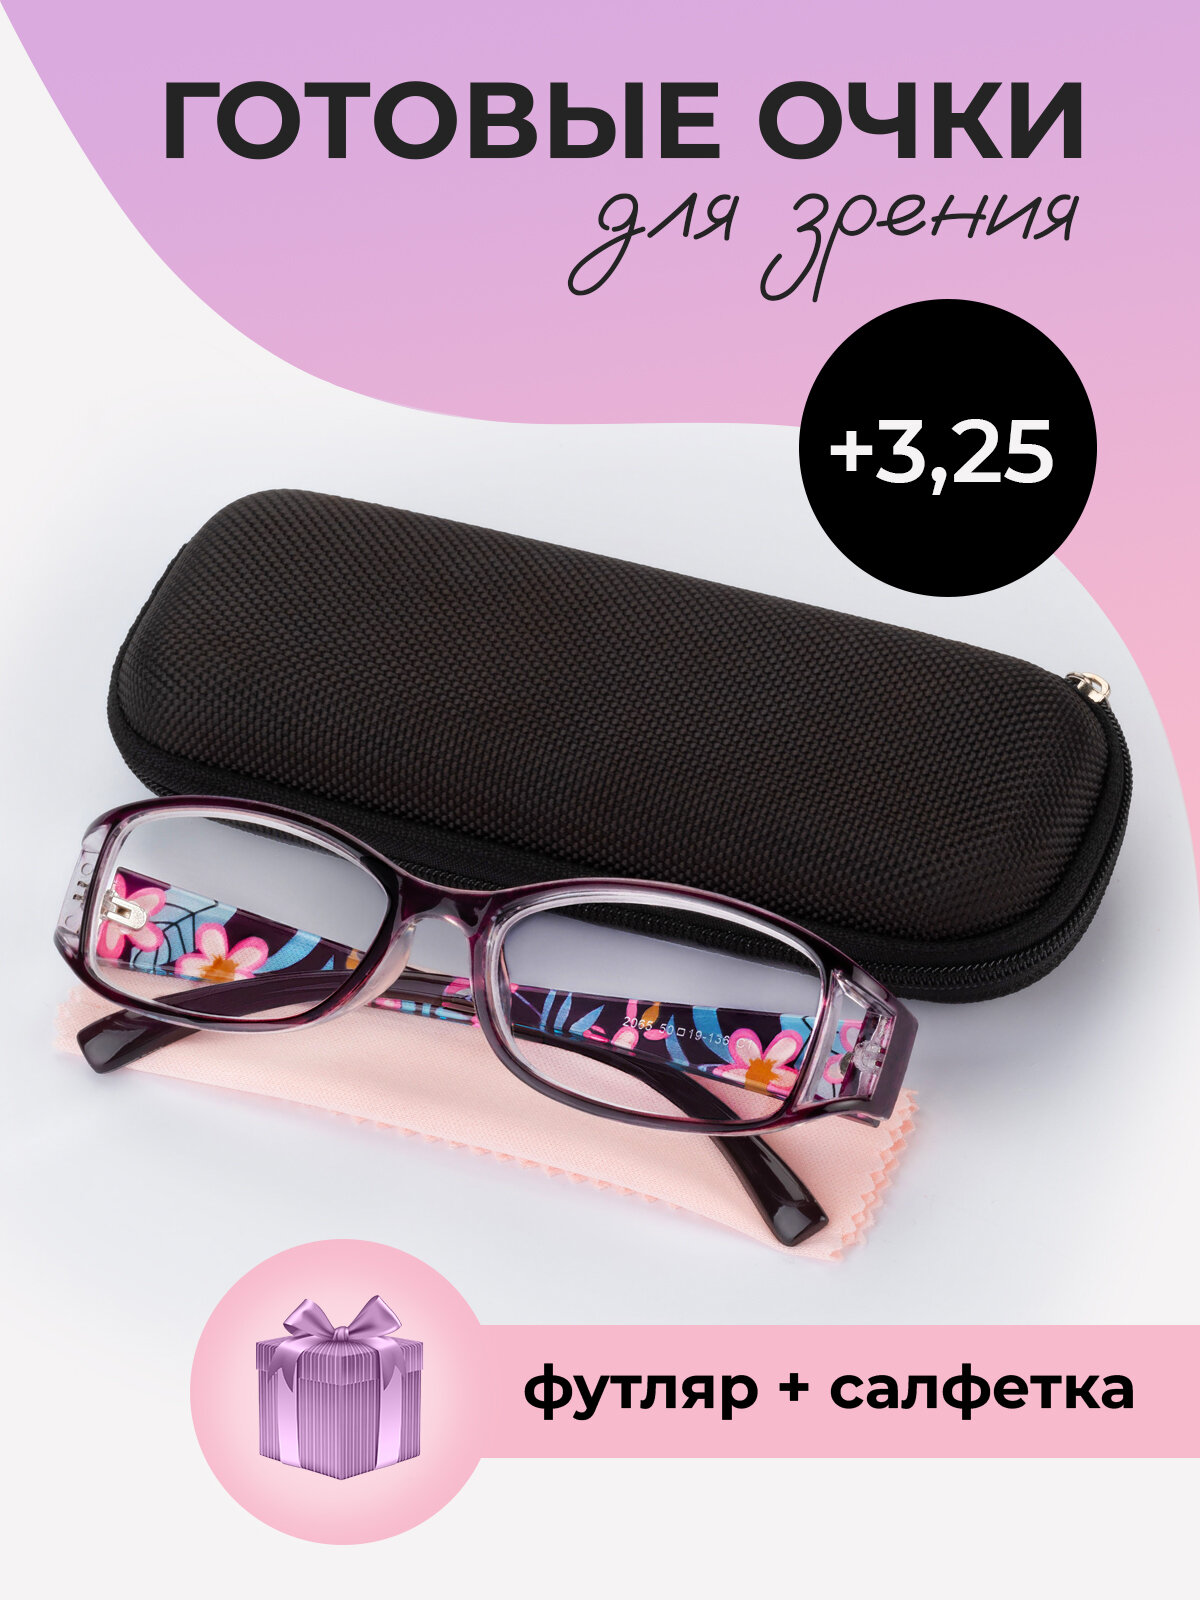 Готовые очки для зрения женские корригирующие с диоптриями +3,25